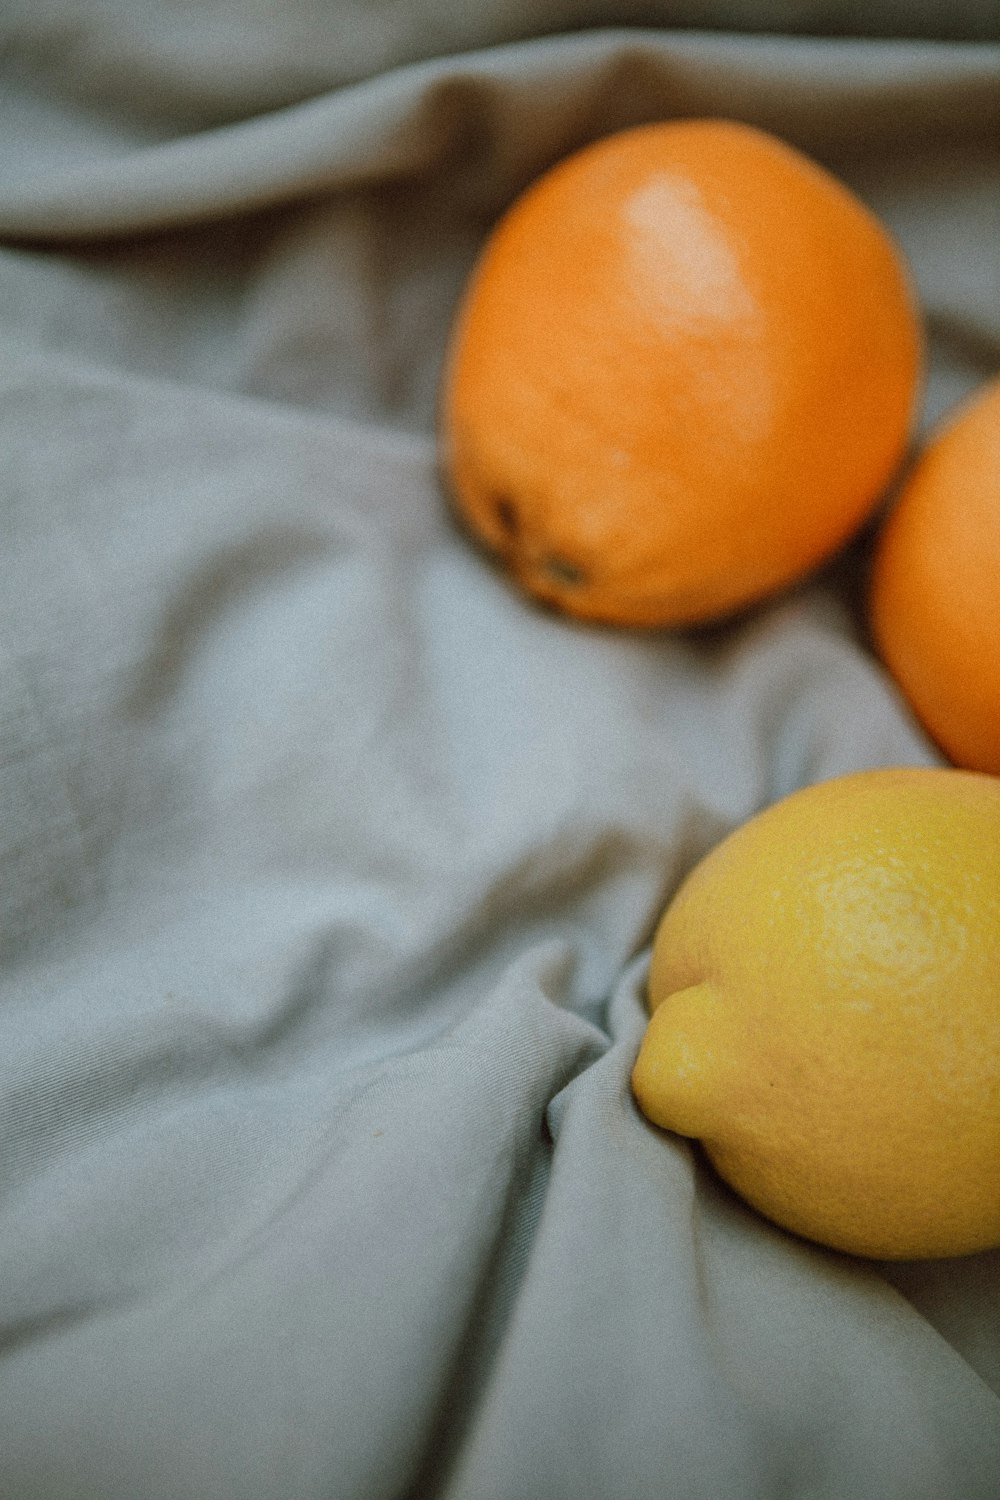 yellow citrus fruit on white textile